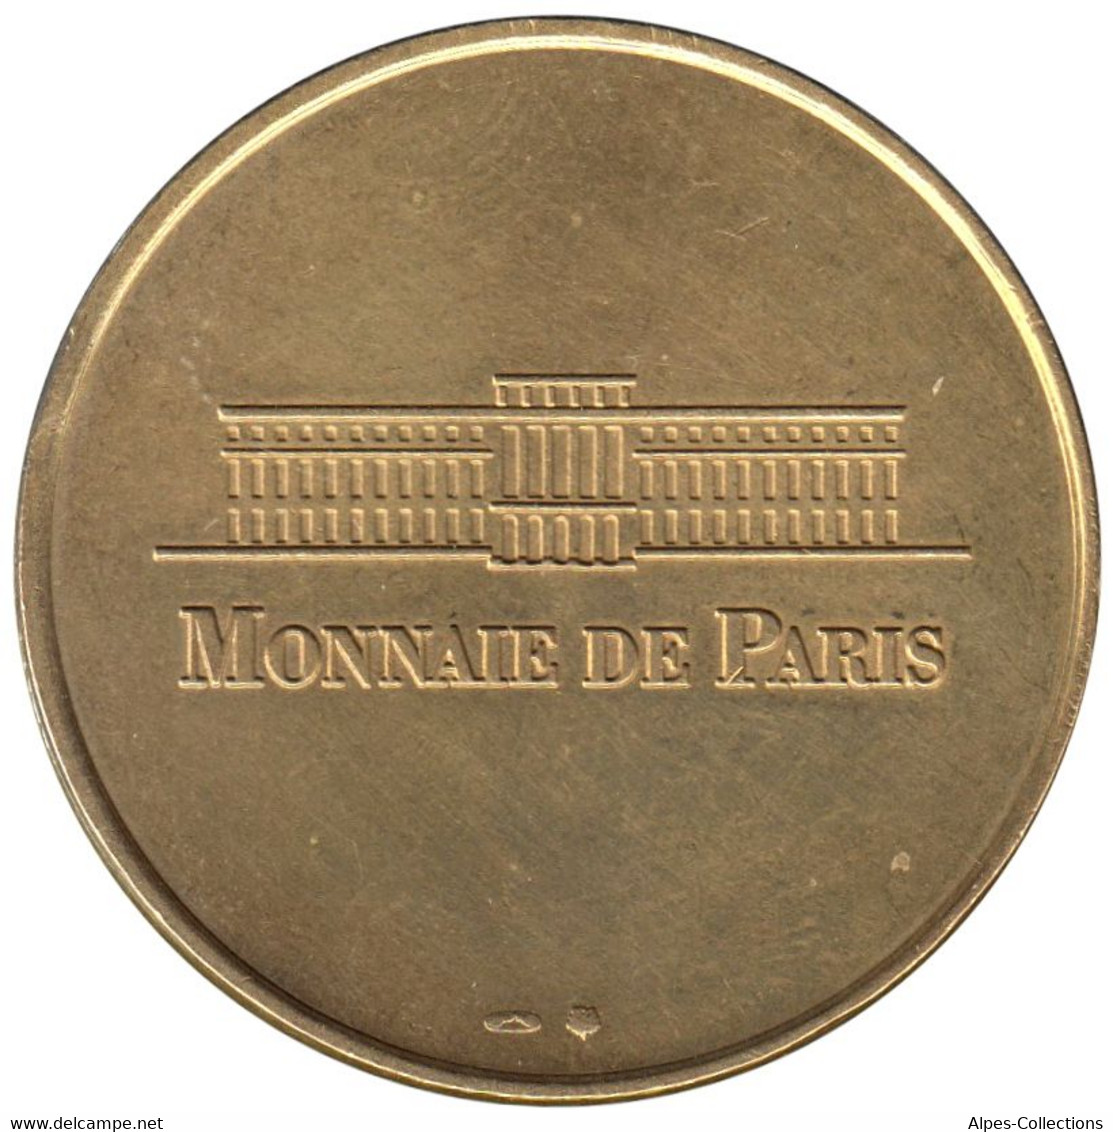 75-0265 - JETON TOURISTIQUE MDP - Arc De Triomphe - CNMHS - 1998.1 - Non-datés